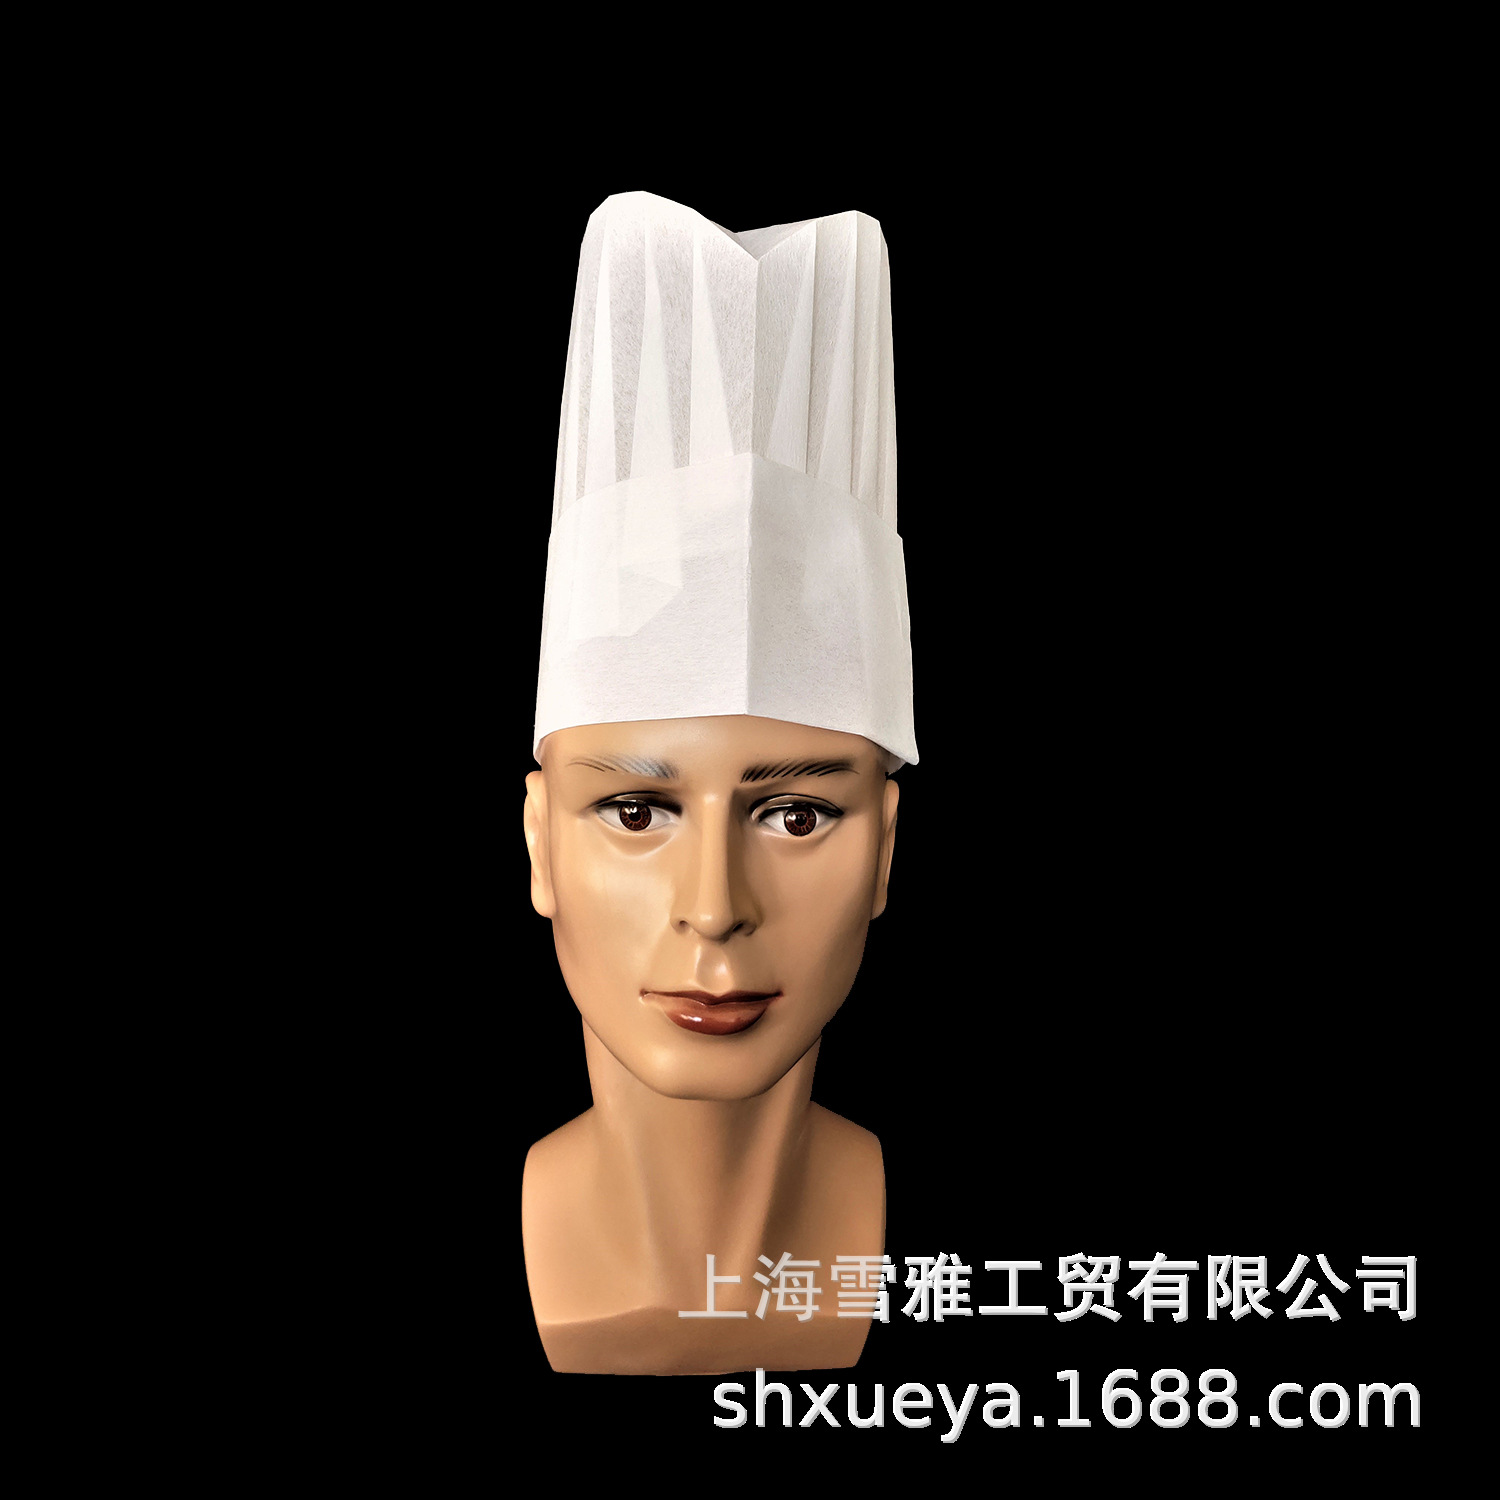 厂家直销一次性无纺布4孔透气式厨师帽  无纺布厨师帽|ru